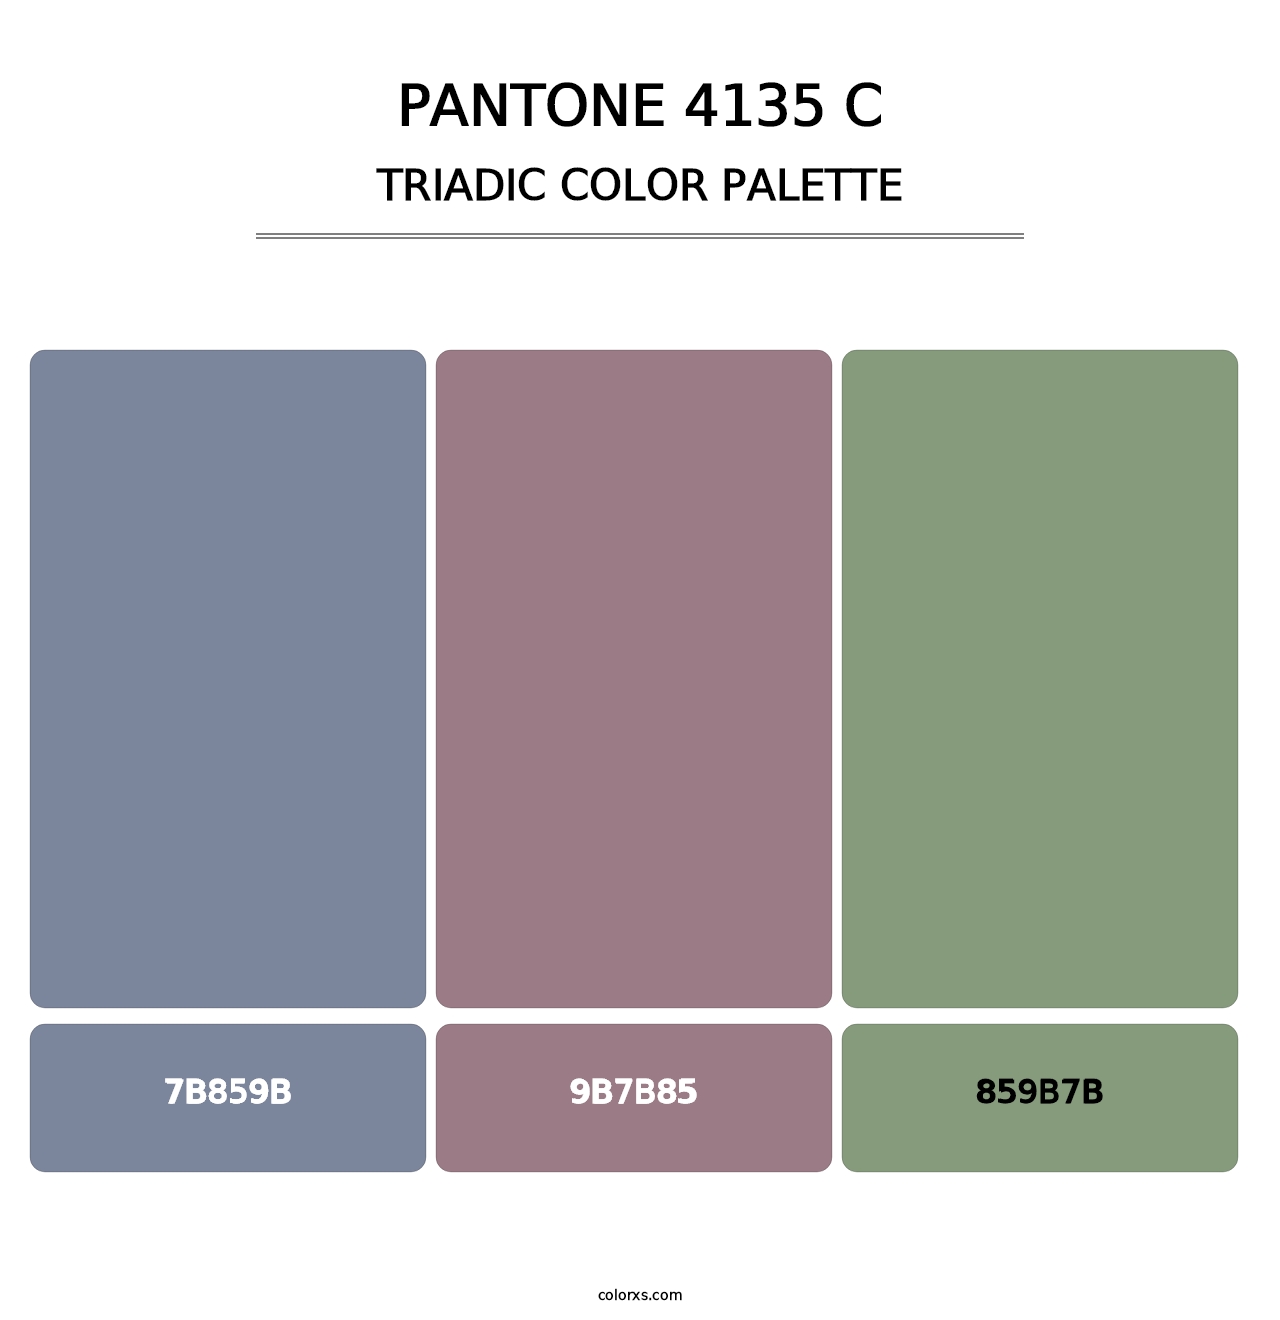 PANTONE 4135 C - Triadic Color Palette